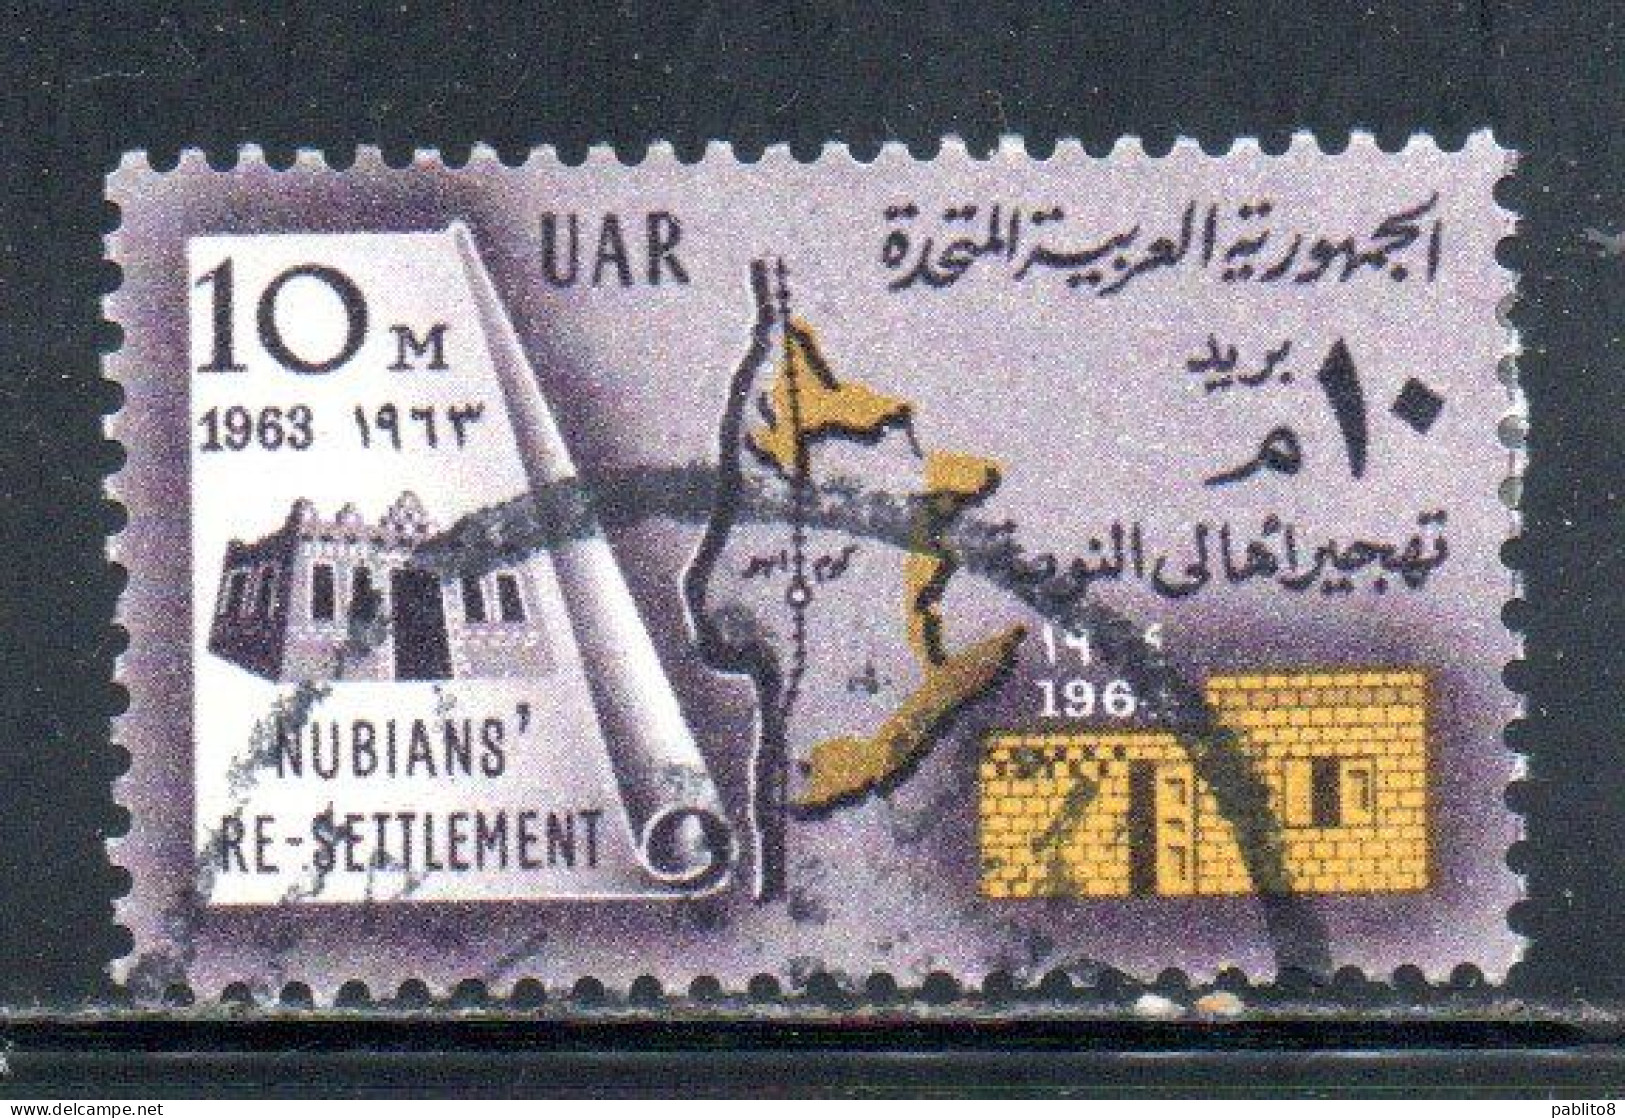 UAR EGYPT EGITTO 1964 RESETTLEMENT OF NUBIAN POPULATION 10m USED USATO OBLITERE' - Gebraucht